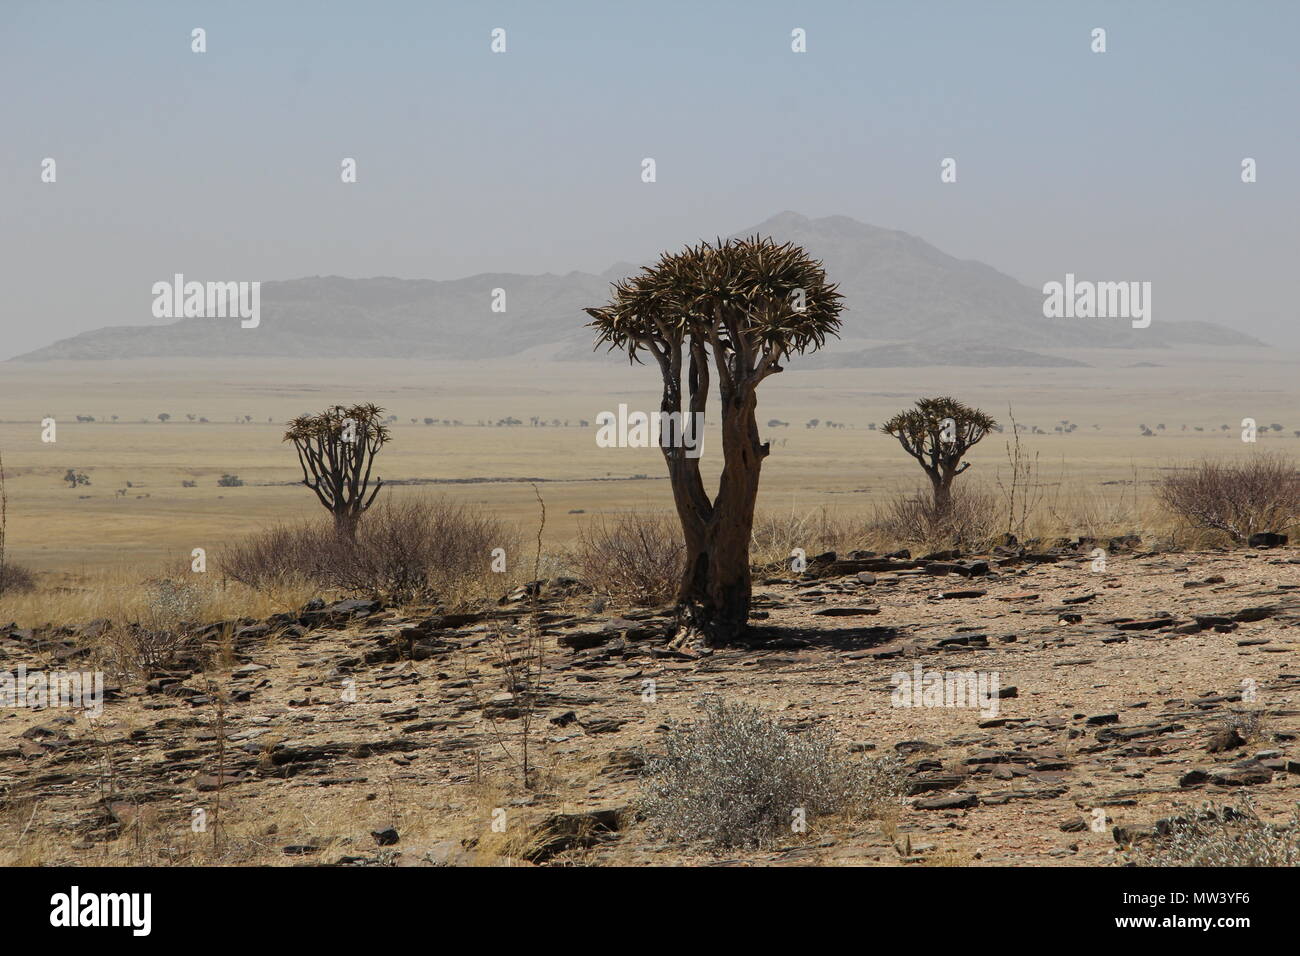 Trees in the desert Stock Photo